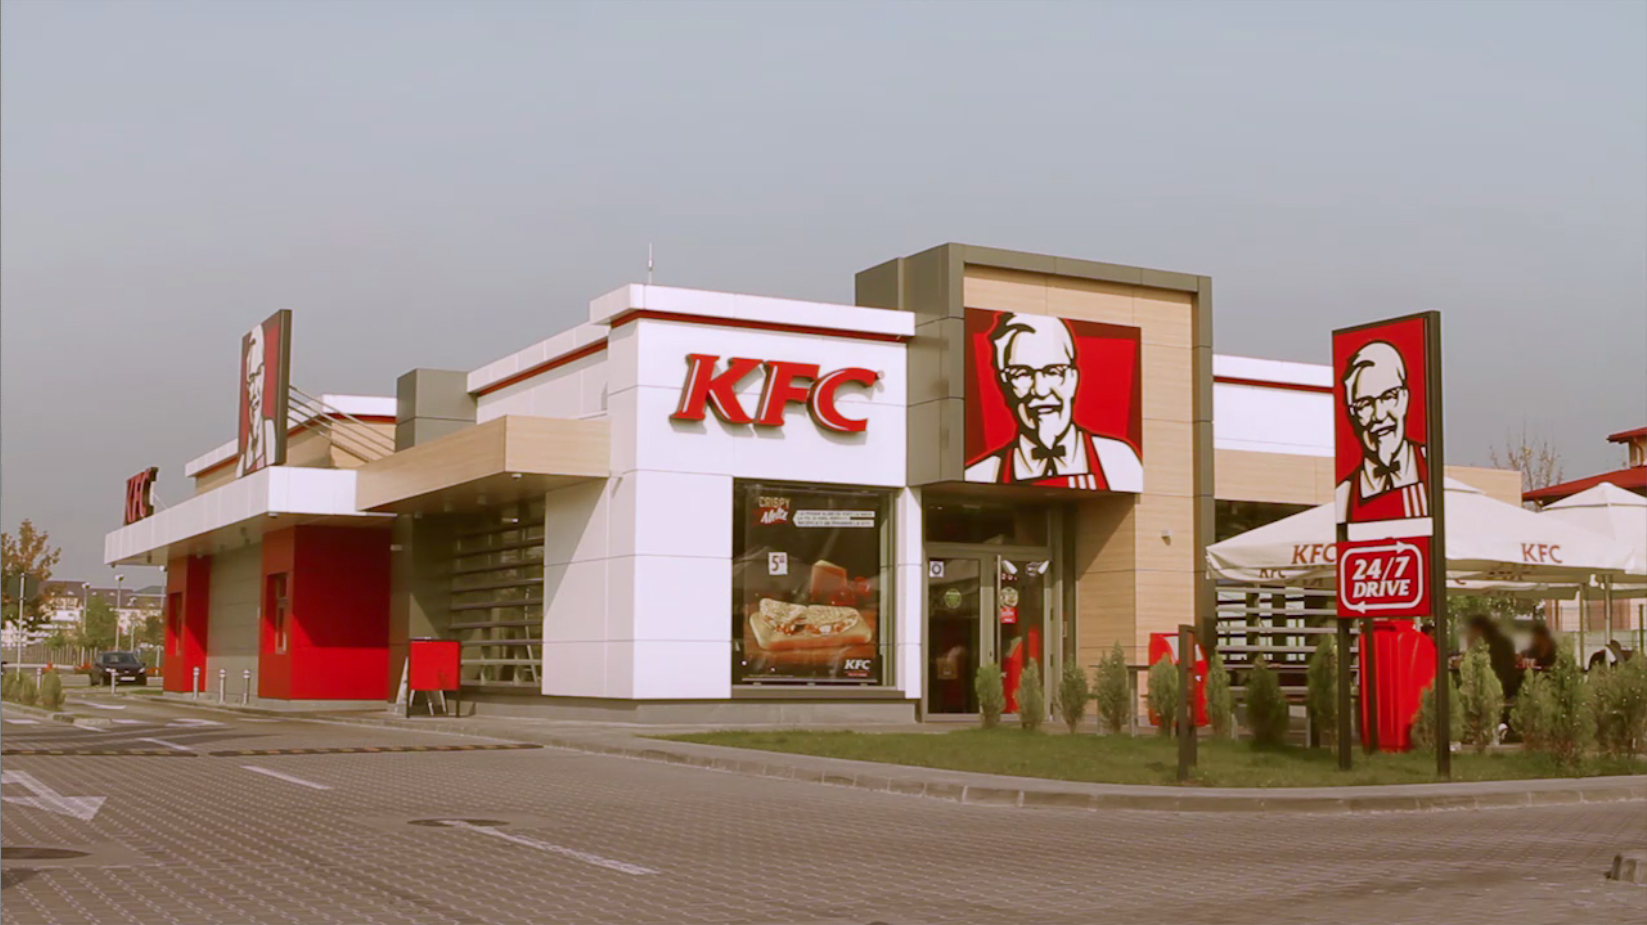 Restaurantul KFC cu cel mai bun design din lume in 2014 